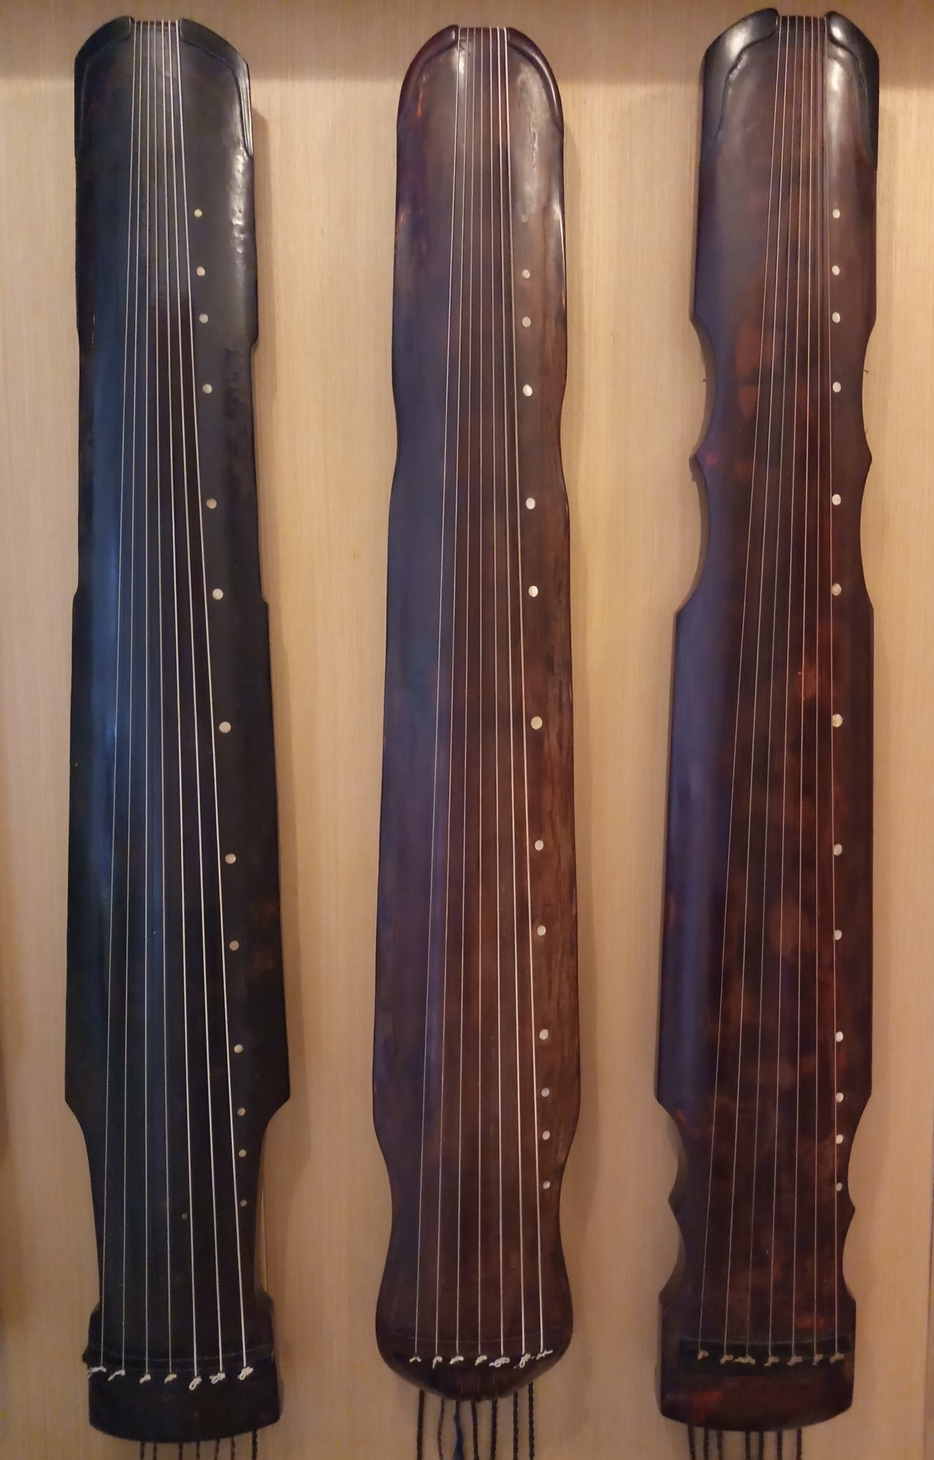 古琴款式 (左起)：仲尼式、蕉叶式、凤势式